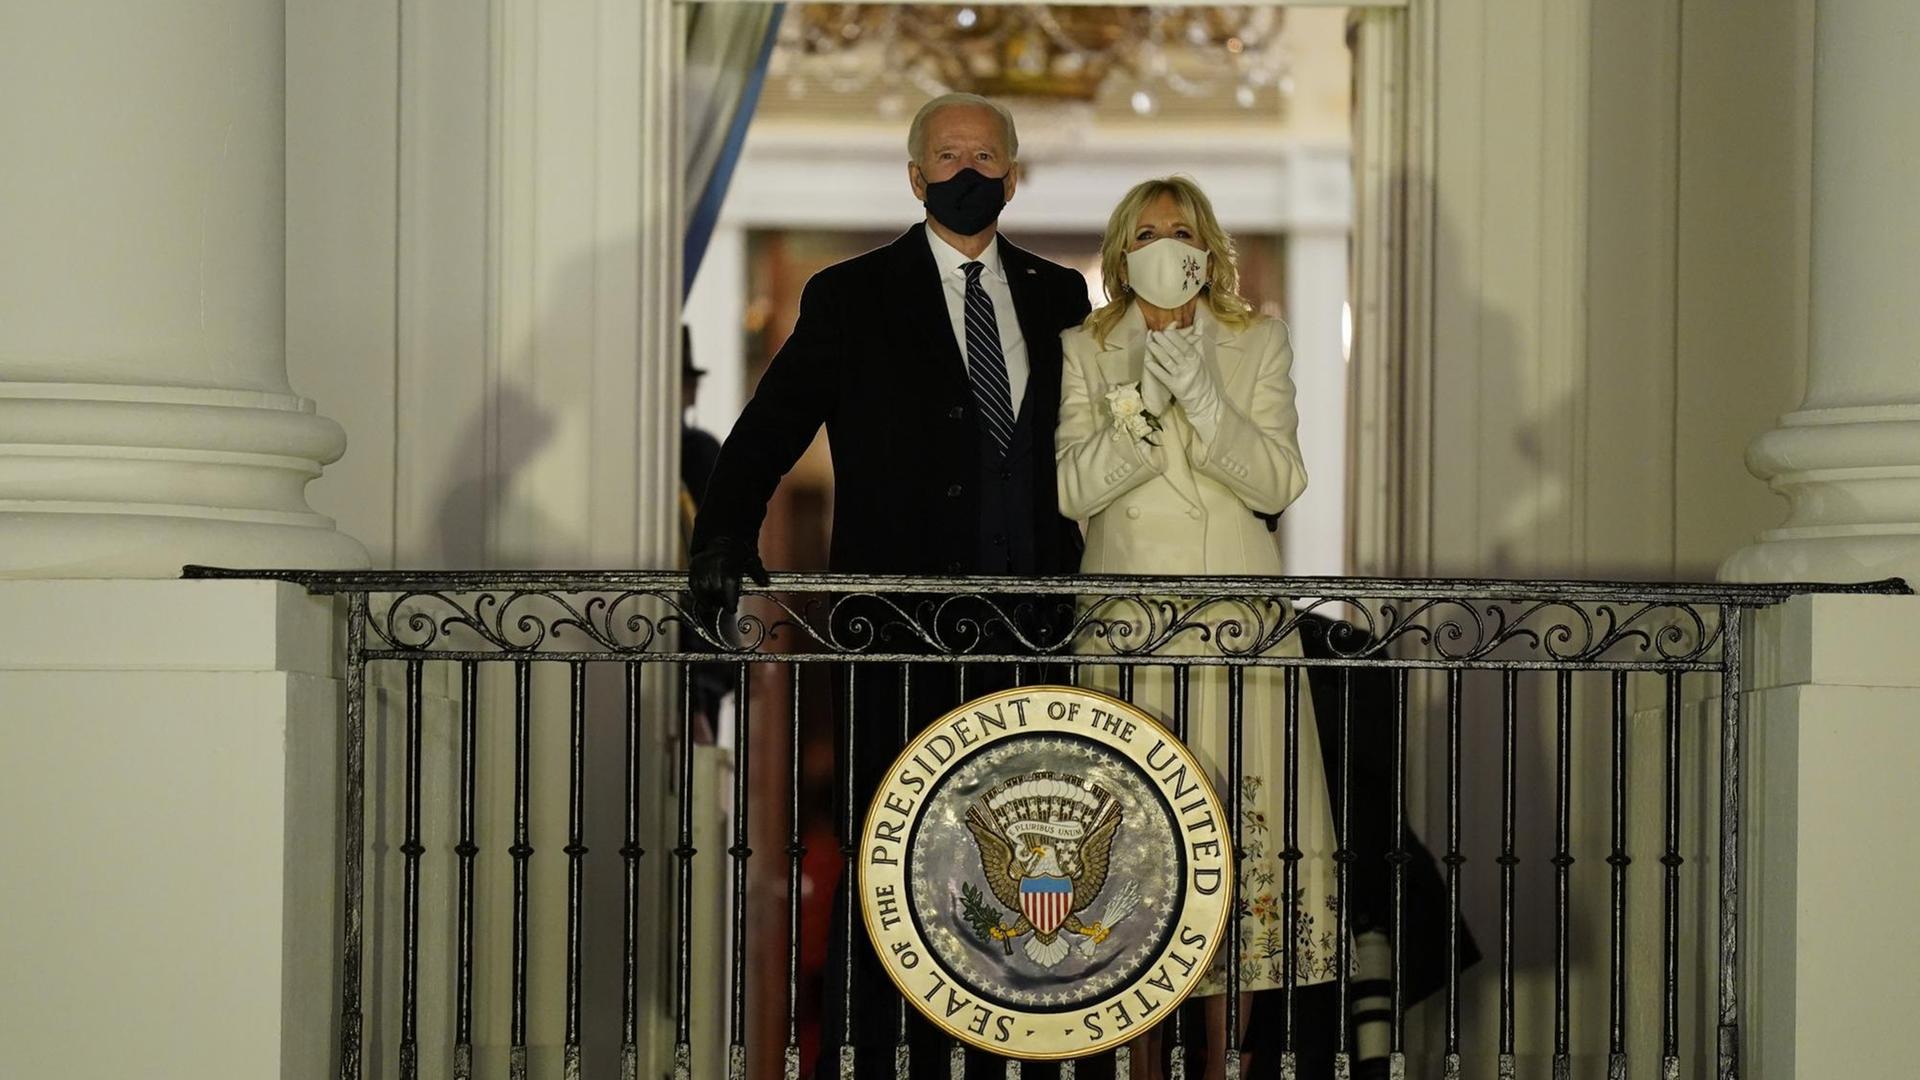 US-Präsident Joe Biden und First Lady Jill Biden sehen vom Balkon im Weißen Haus auf ein Feuerwerk zu seiner Amtseinführung.